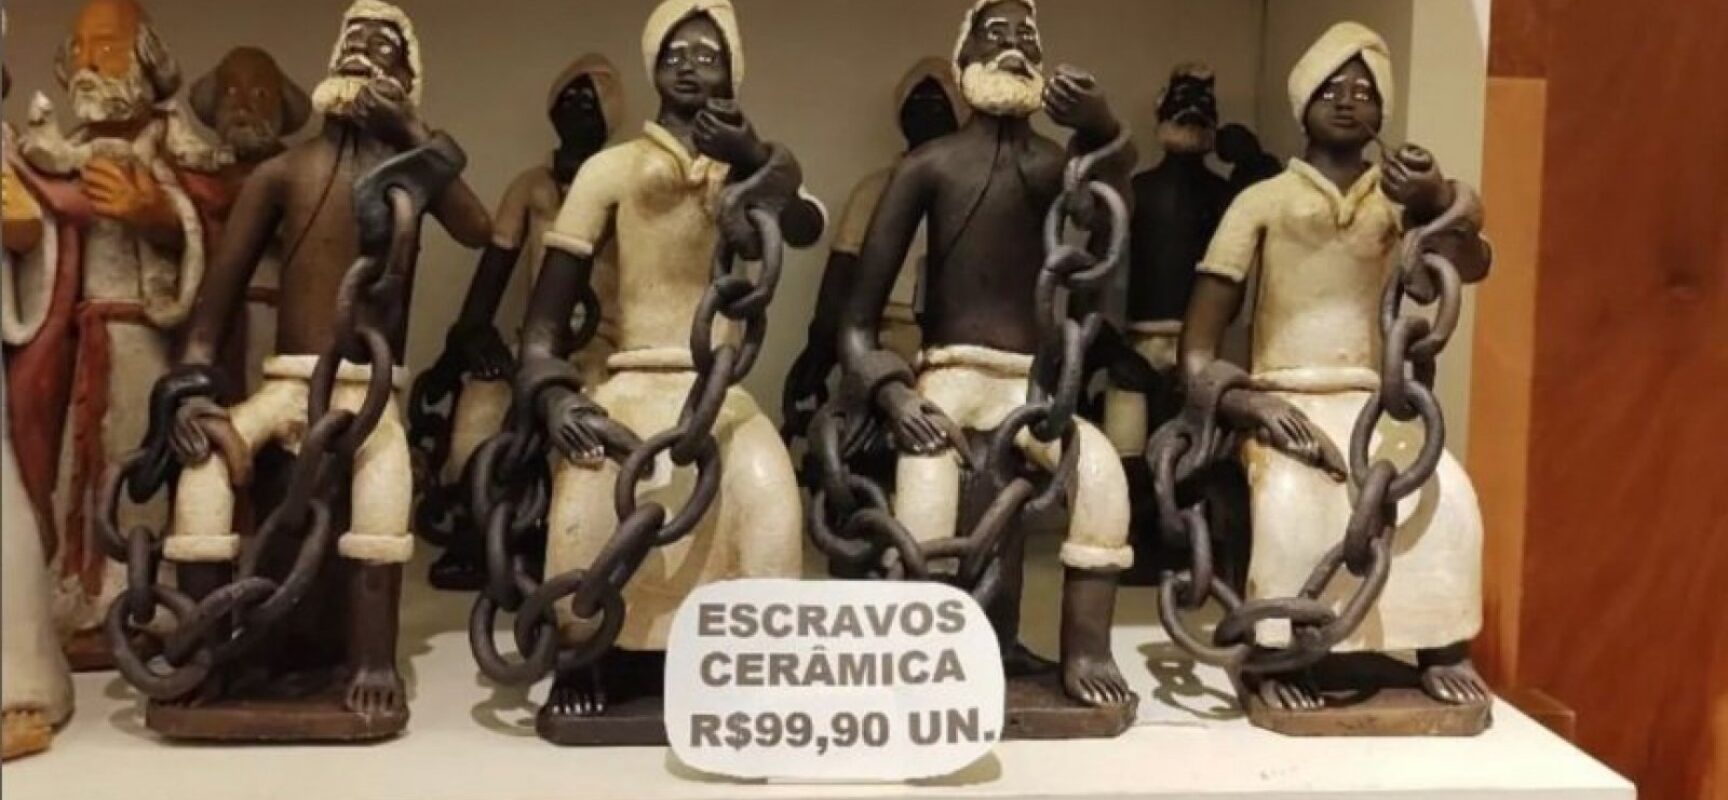 Loja vende cerâmica de negros acorrentados como souvenir no aeroporto de Salvador